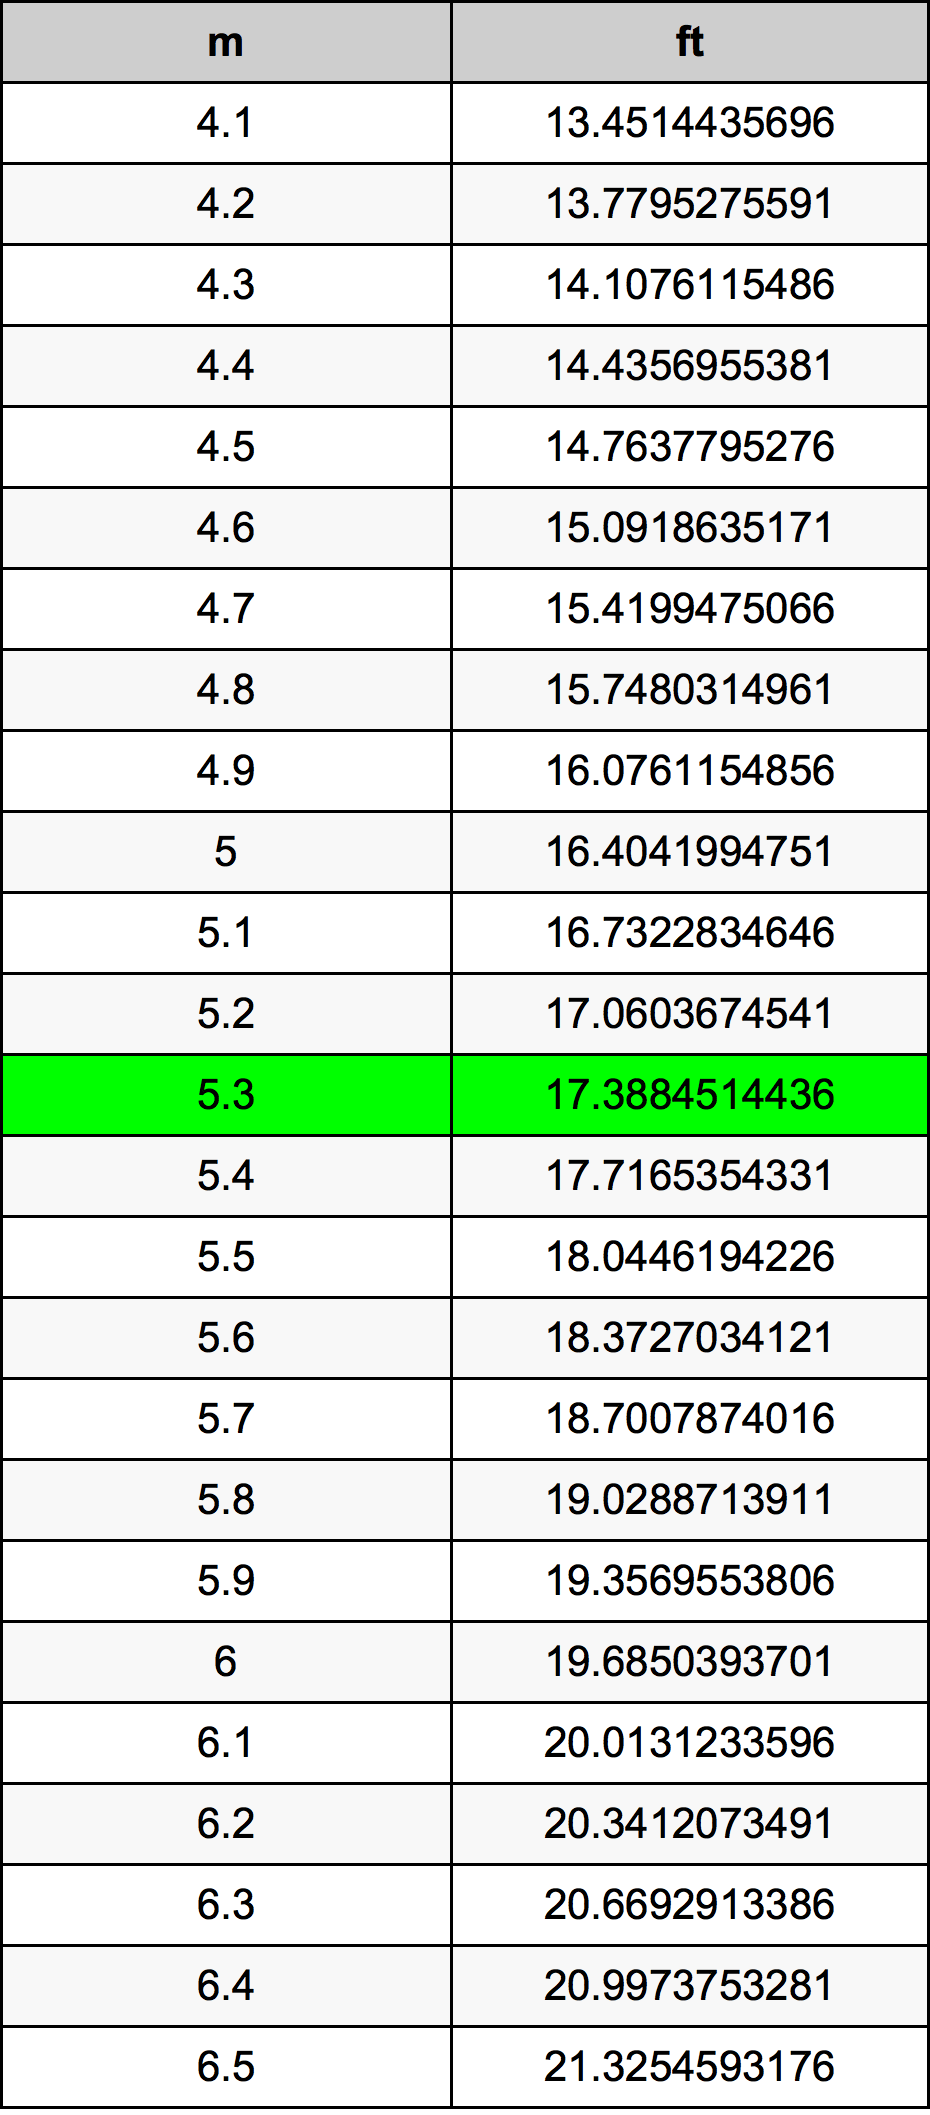 5.3 Metru tabelul de conversie